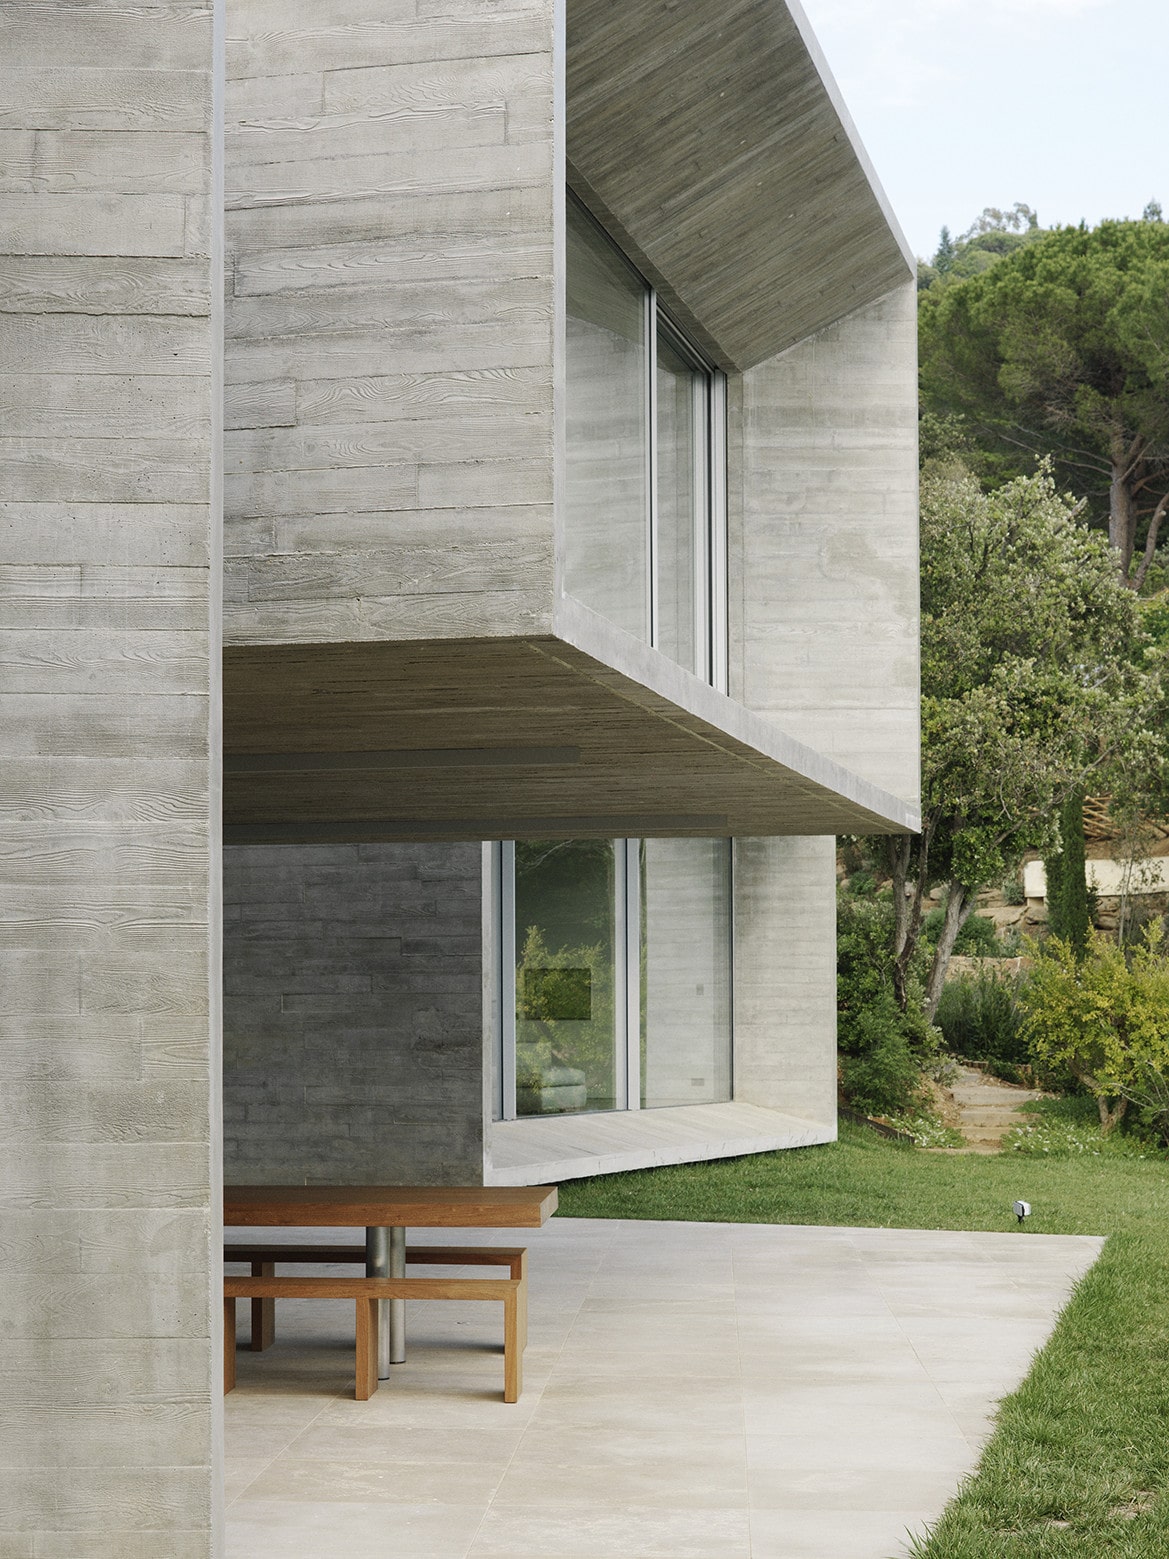 La casa minimalista moderna, sus diseños y materiales ✓